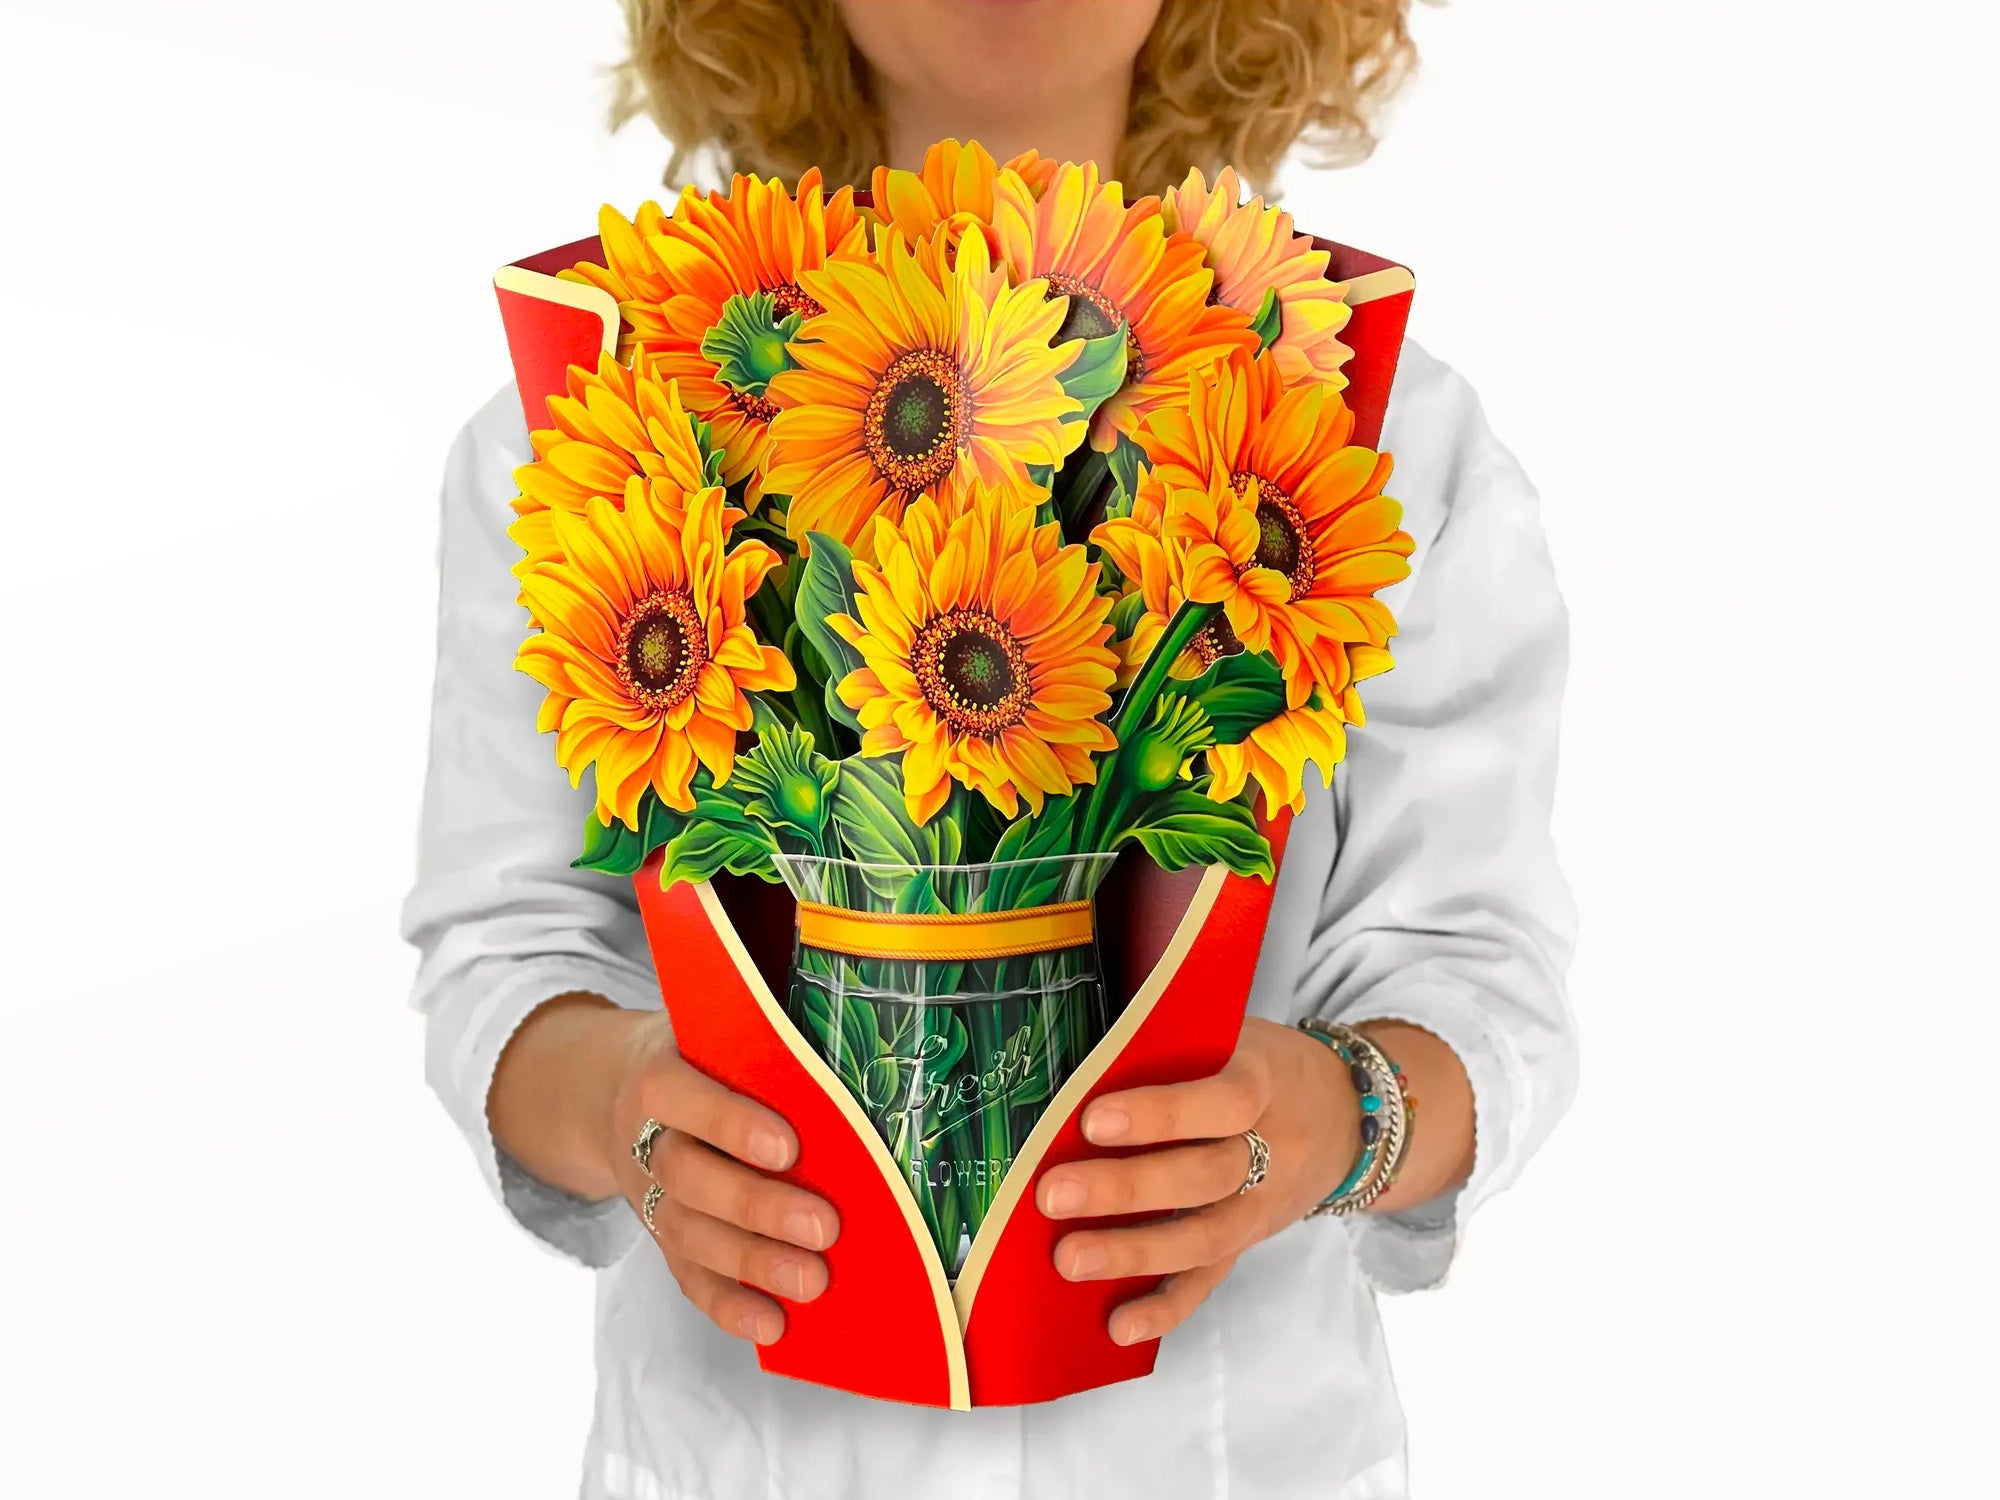 https://www.jennibick.com/cdn/shop/products/sunflower-pop-up-greeting-bouquet.jpg?v=1683353973